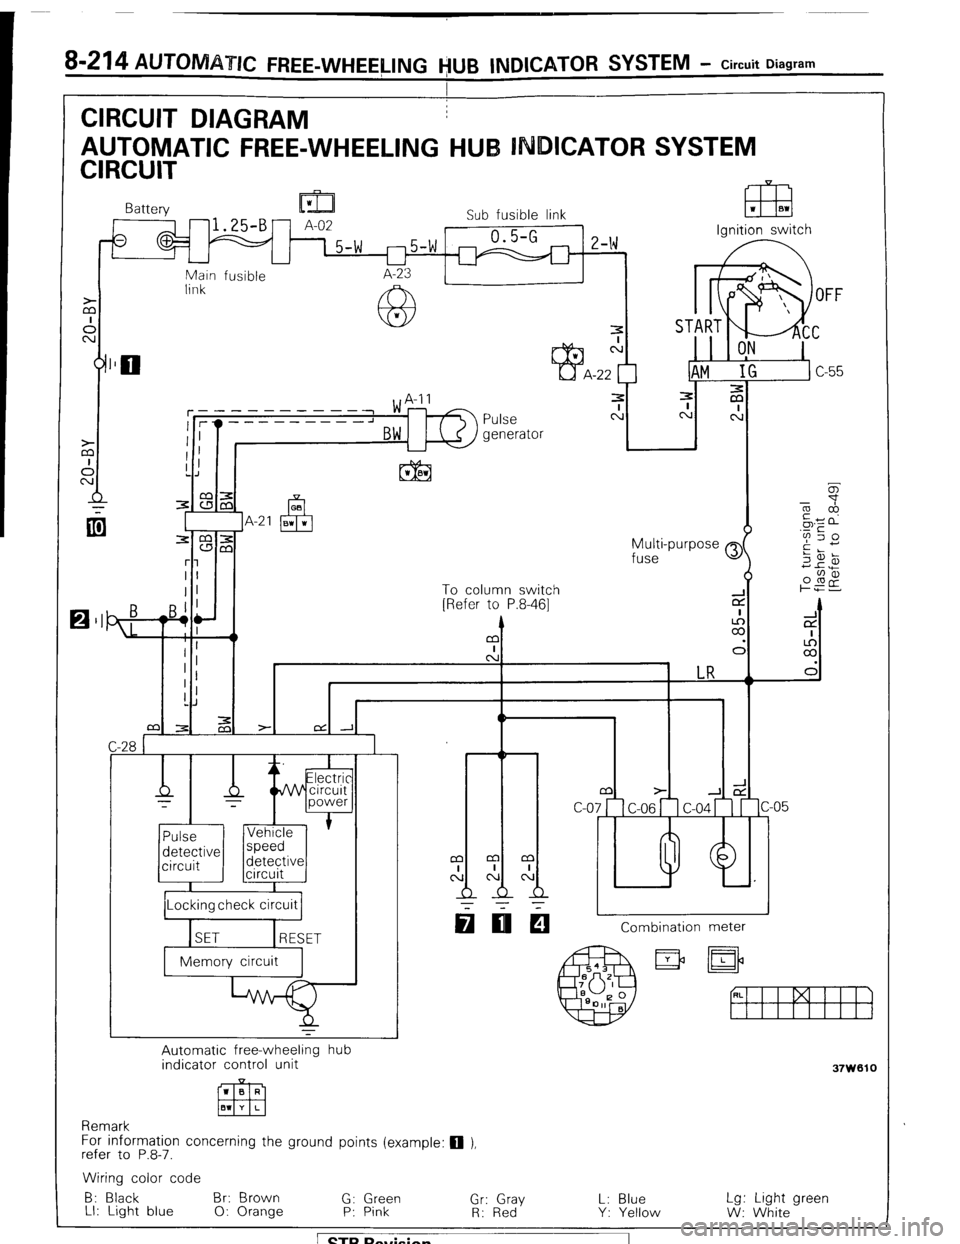 MITSUBISHI MONTERO 1987 1.G Workshop Manual 8-214 AUTOM TIC FREE-WHEELING VU6 INDICATOR SYSTEM - Circuit Diagram 
I 
m I IA-21 m 
v?~ 
r: 
BI I To column switch 
2 
[Refer to P.8-461 CT 
= 9’i A I 
I 
m z 
I ’ 
c: d 
I ’ 
LR 
!J 
I I 1 
C